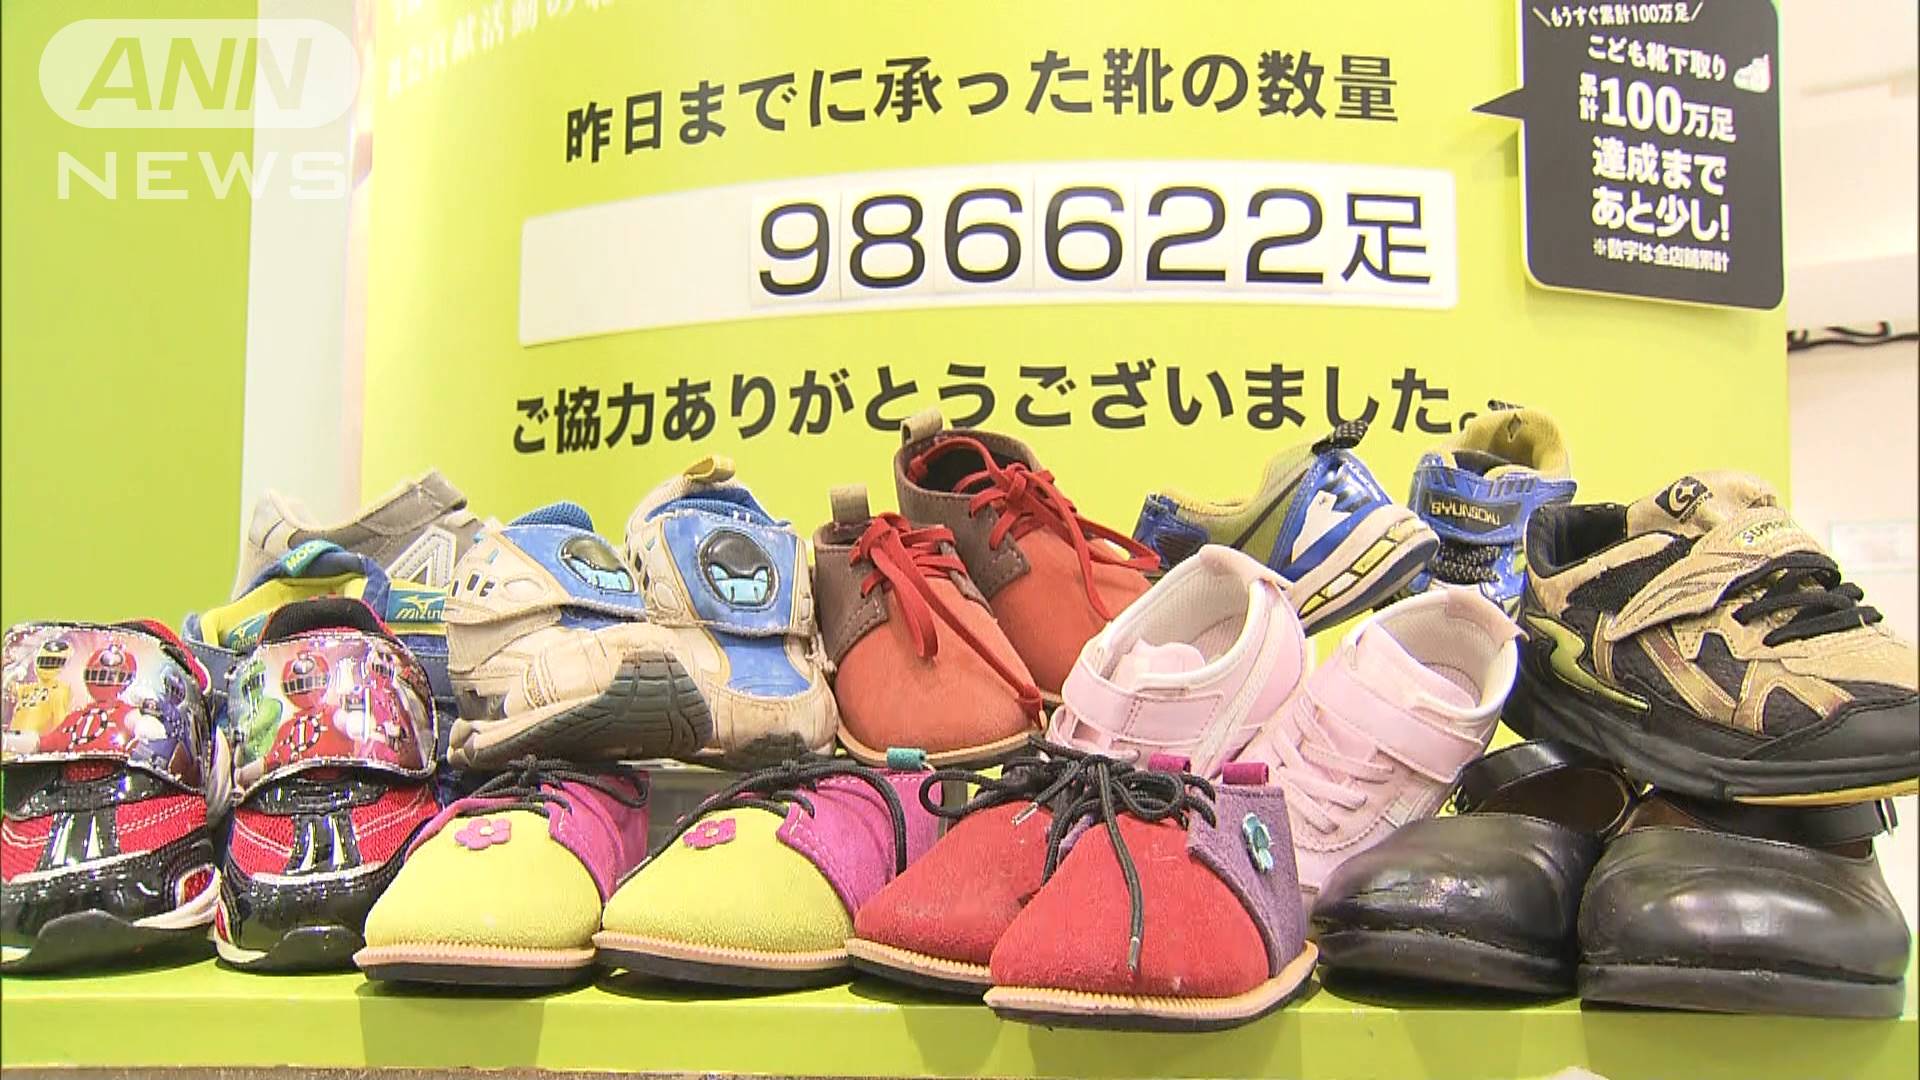 アフリカの子どもたちに靴を 下取りで500円割引券 テレ朝news テレビ朝日のニュースサイト